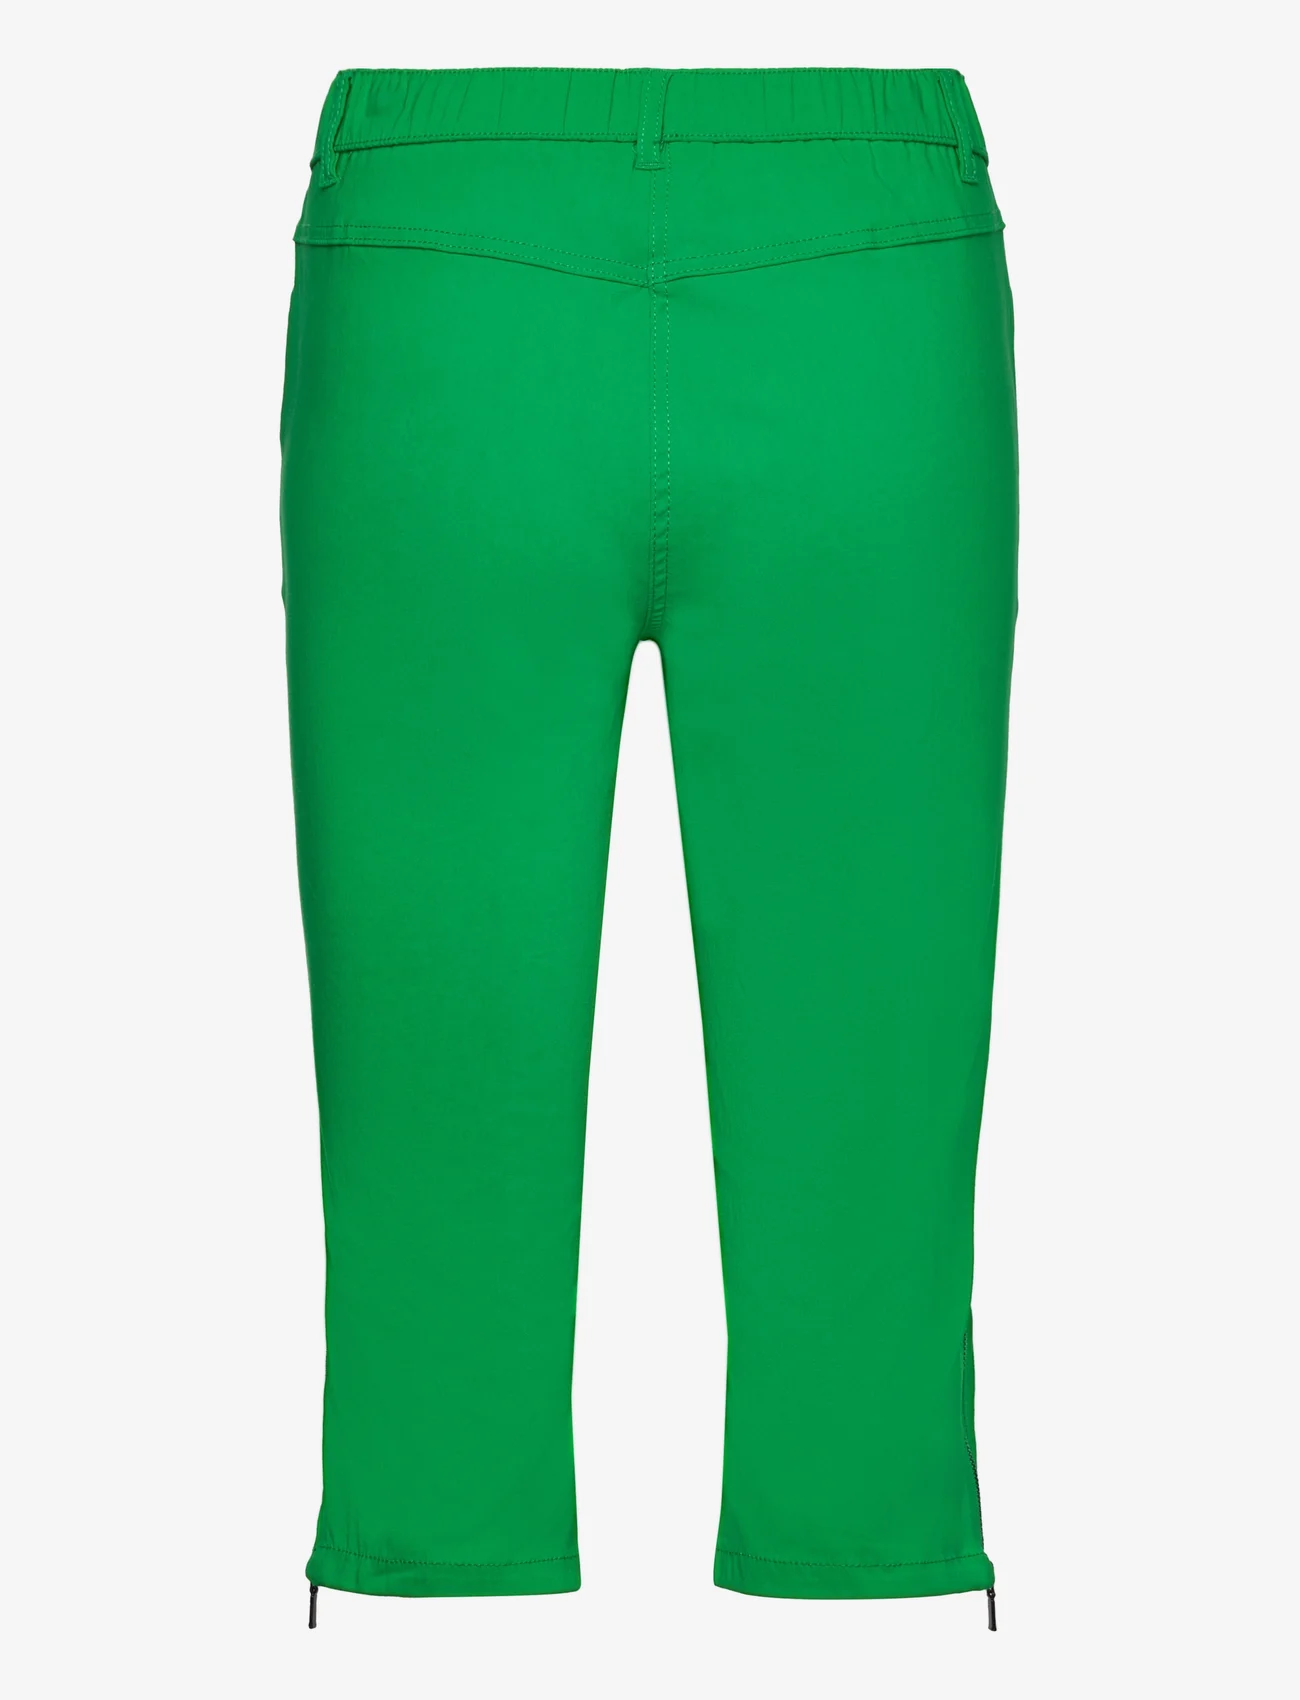 Brandtex - Capri pants - pusgarās bikses - bright green - 1